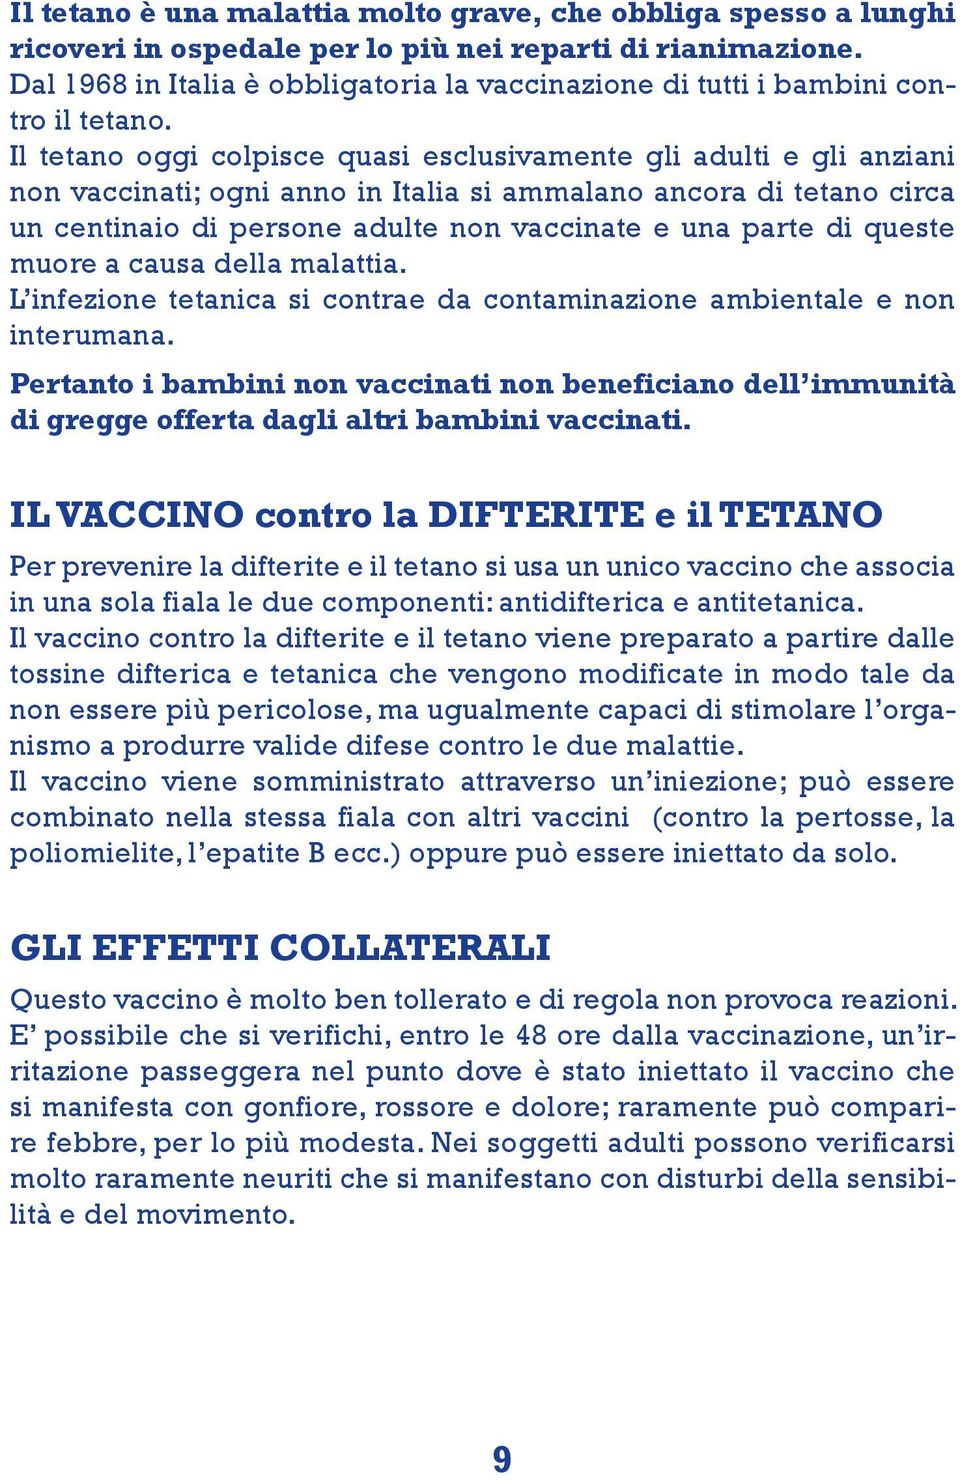 Il tetano oggi colpisce quasi esclusivamente gli adulti e gli anziani non vaccinati; ogni anno in Italia si ammalano ancora di tetano circa un centinaio di persone adulte non vaccinate e una parte di